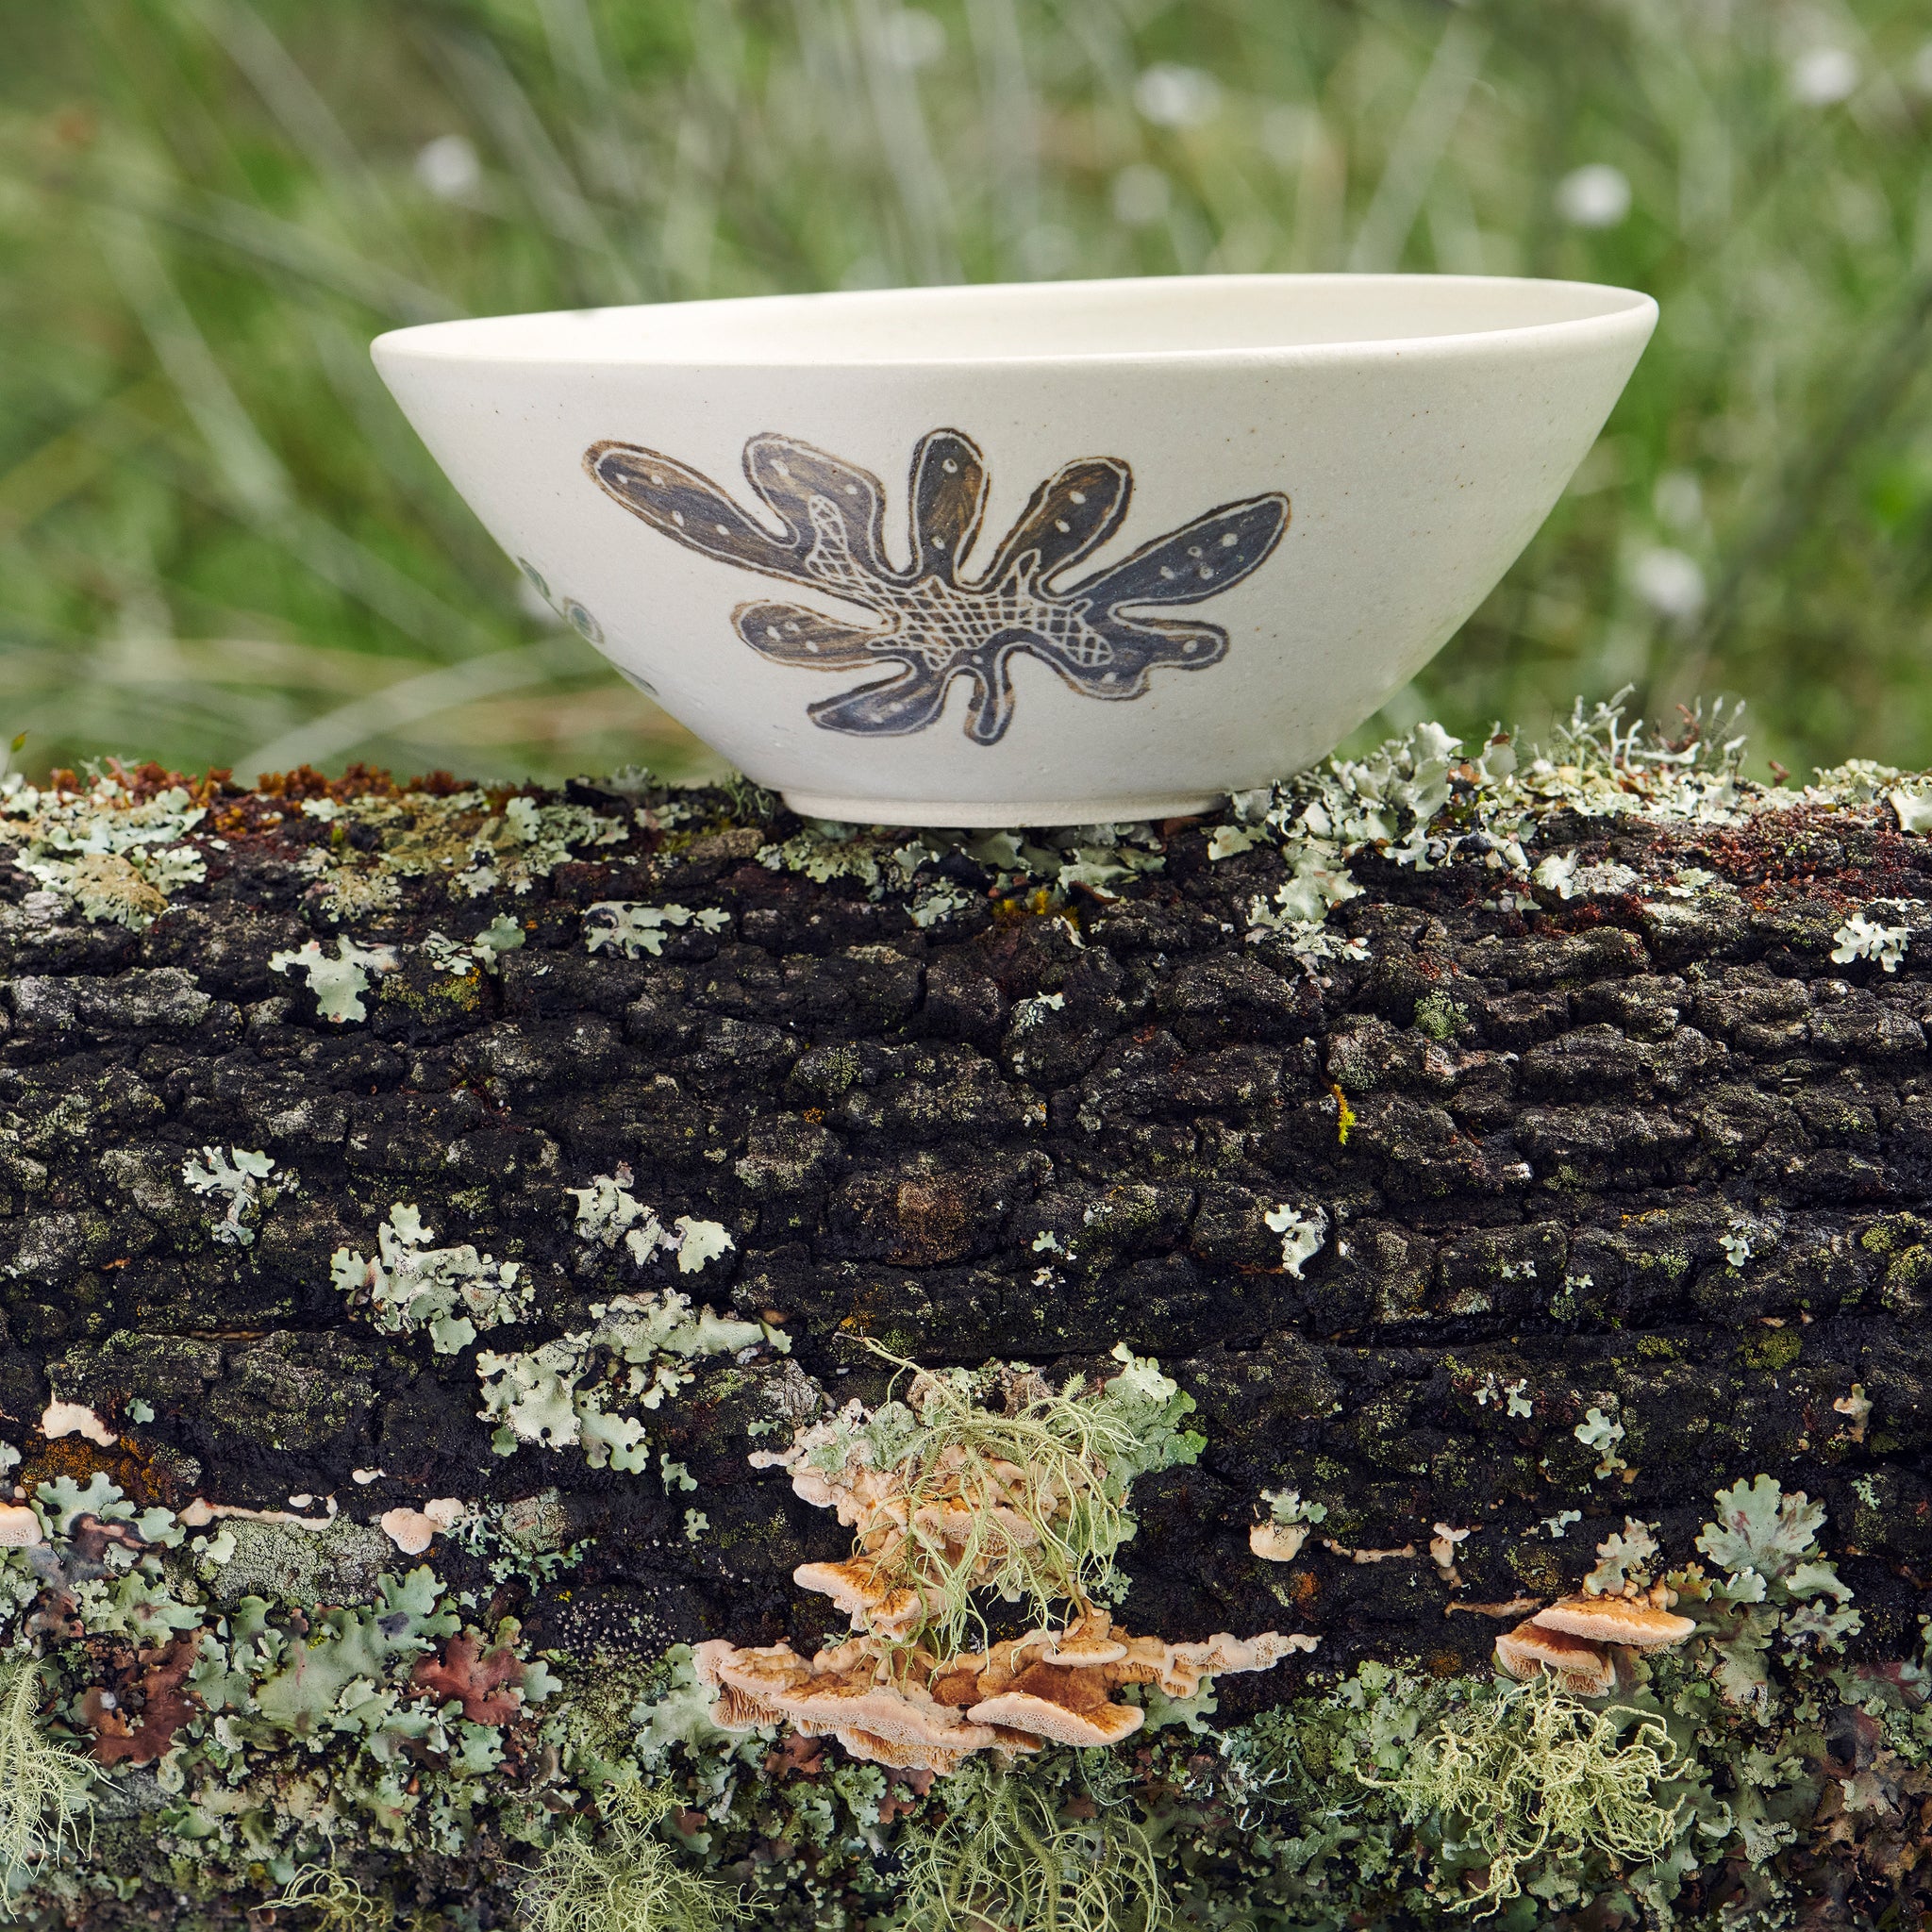 The Lichen Bowl 1.0